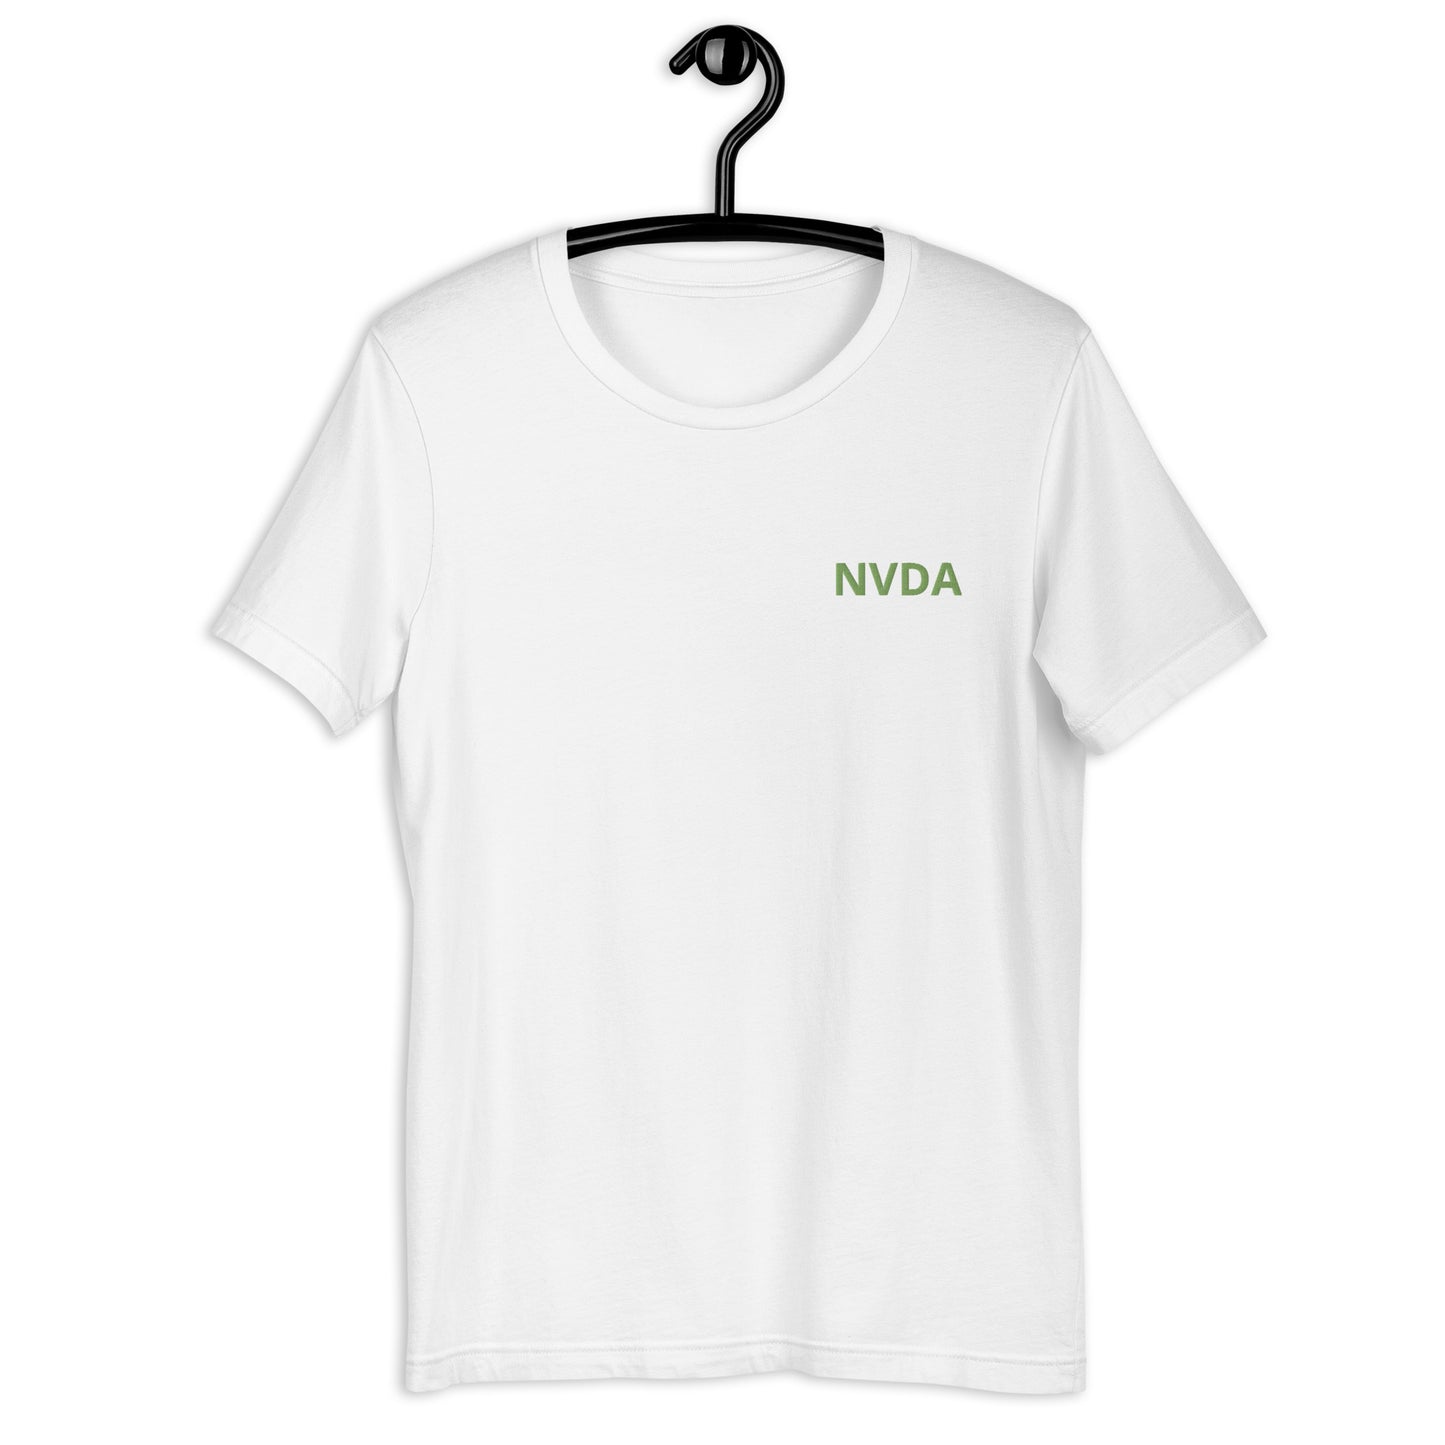 Unisex NVDA t-shirt